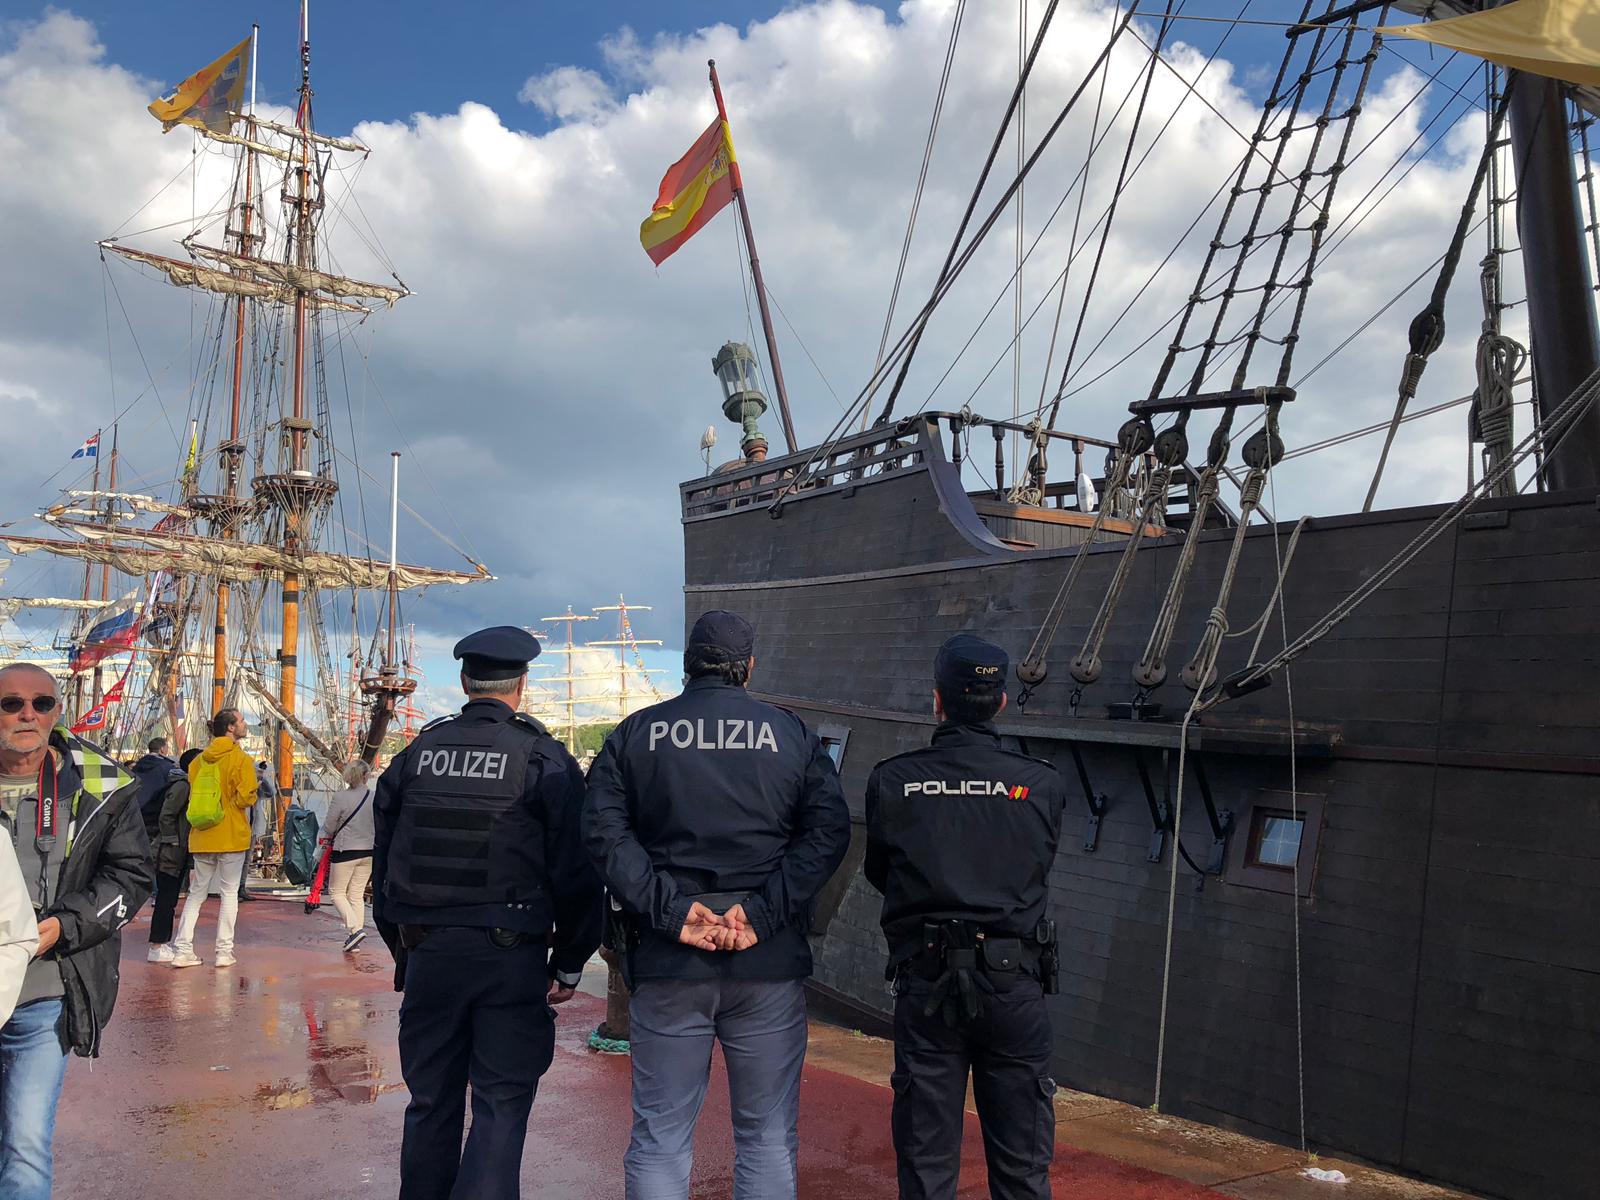 Policia Nacional amb agents d'altres països uniformats enfront de barca amb bandera espanyola.